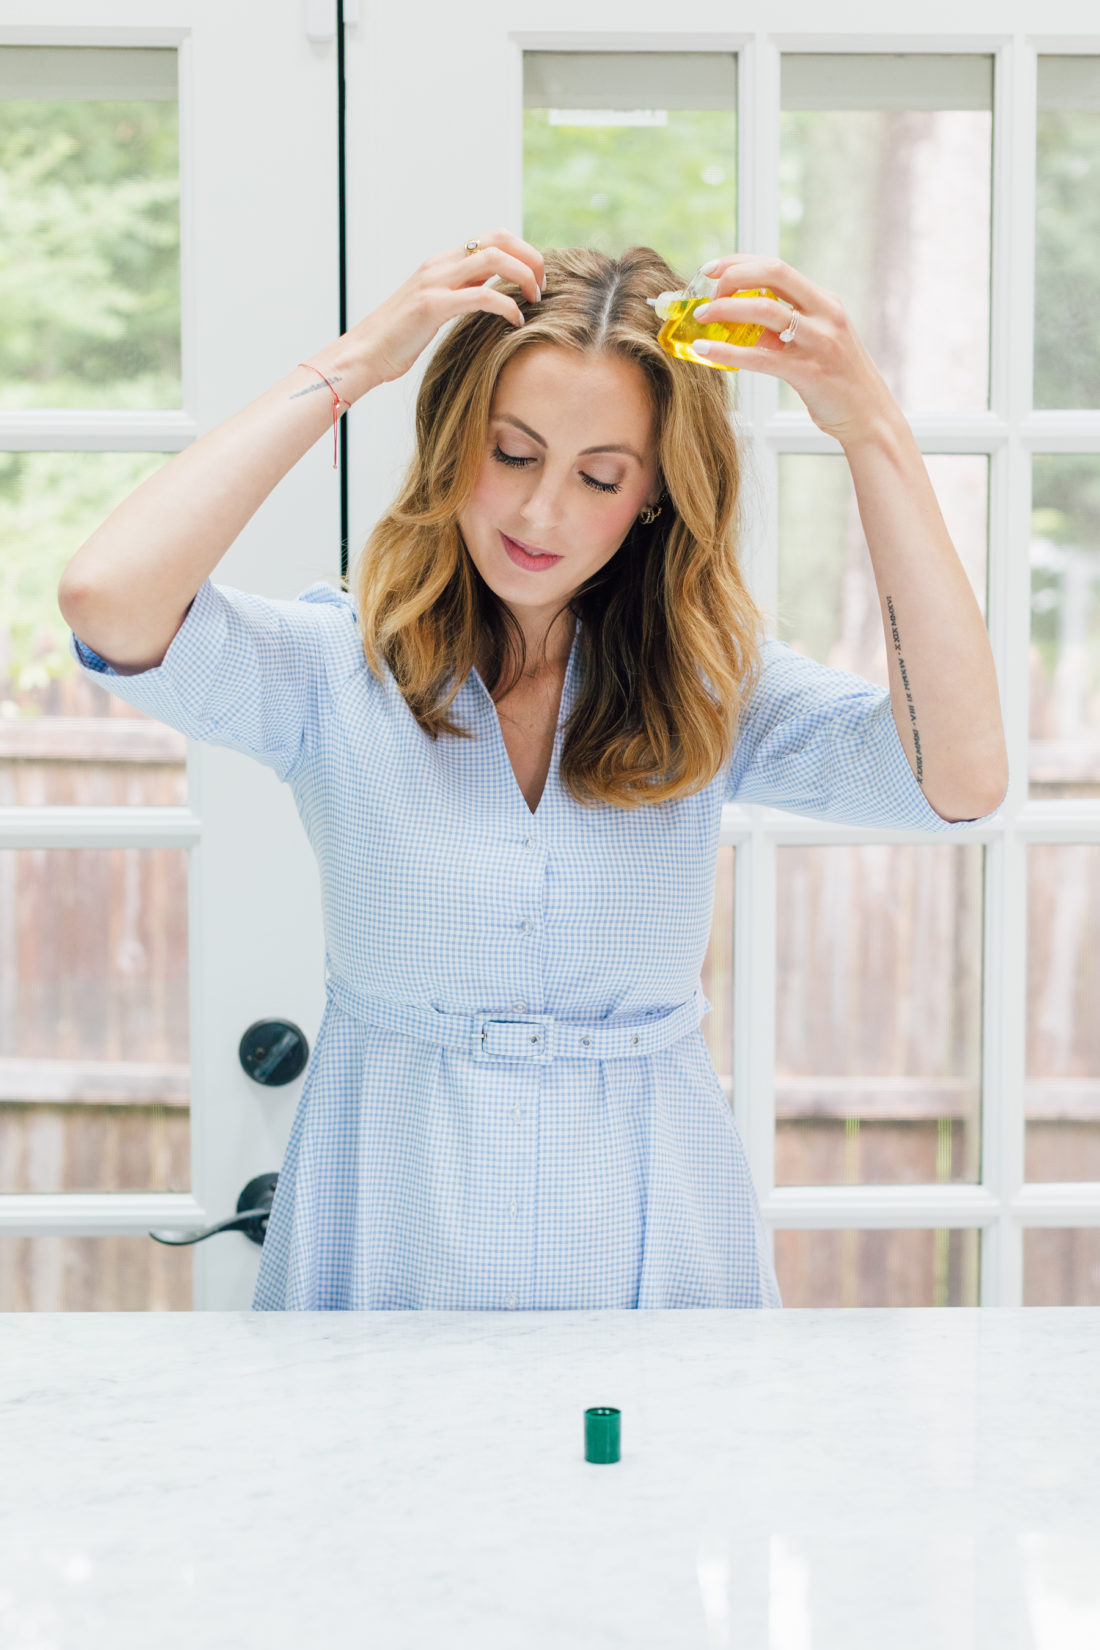 Eva Amurri Martino shares her favorite scalp oil from Furterer Complexe 5